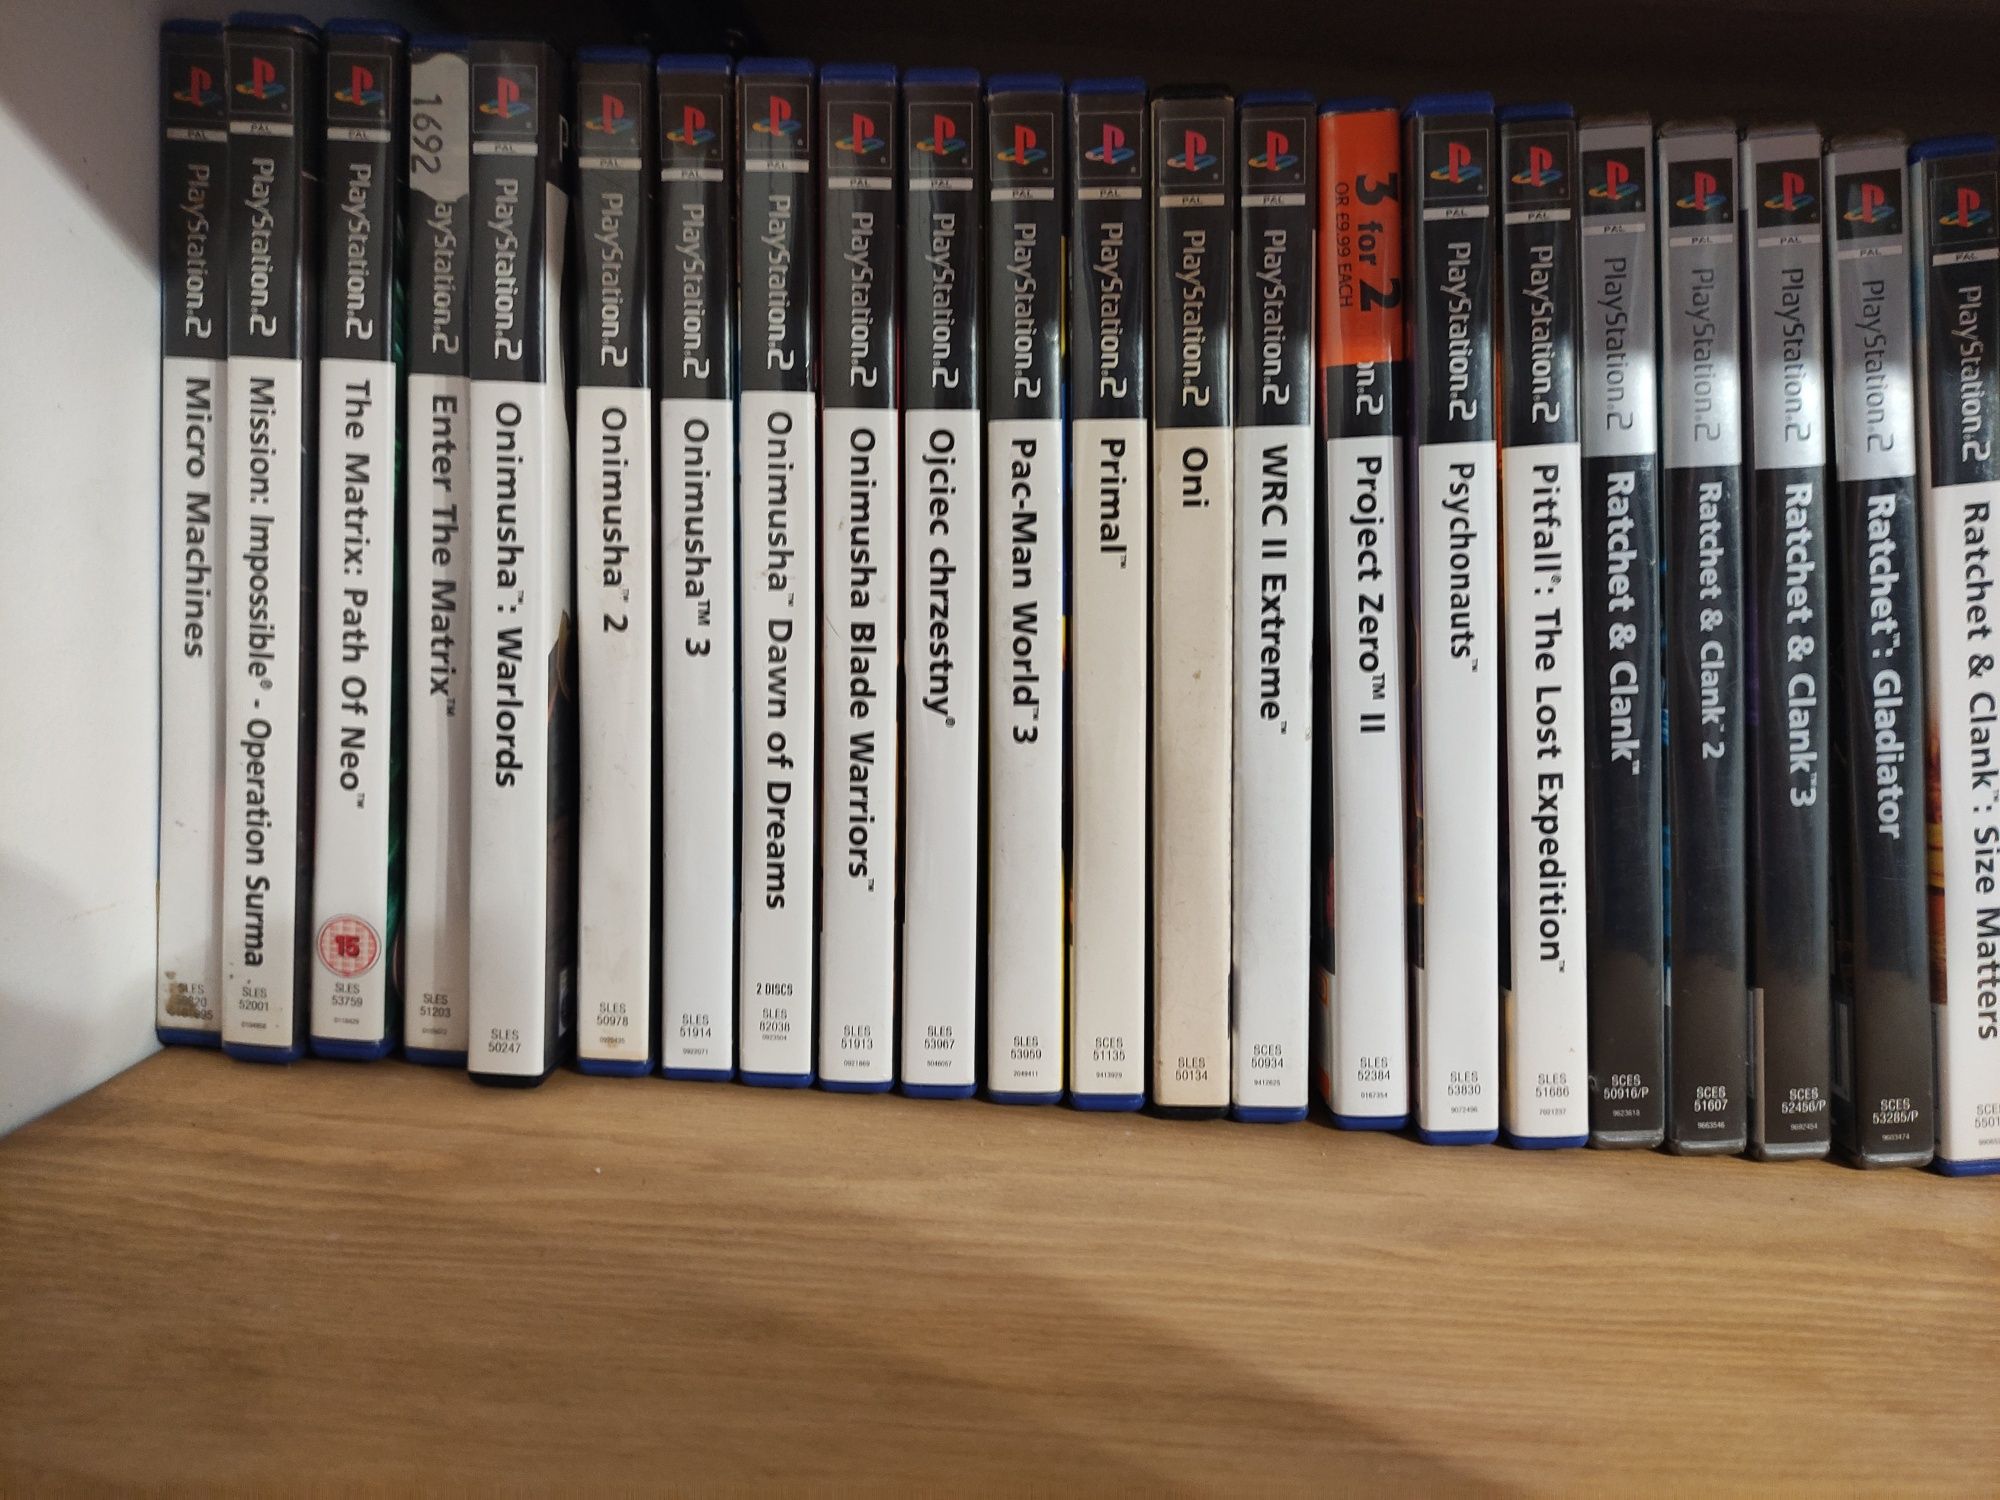 Sprzedam Gry PlayStation 2 PS2 Wyprzedaż kolekcji